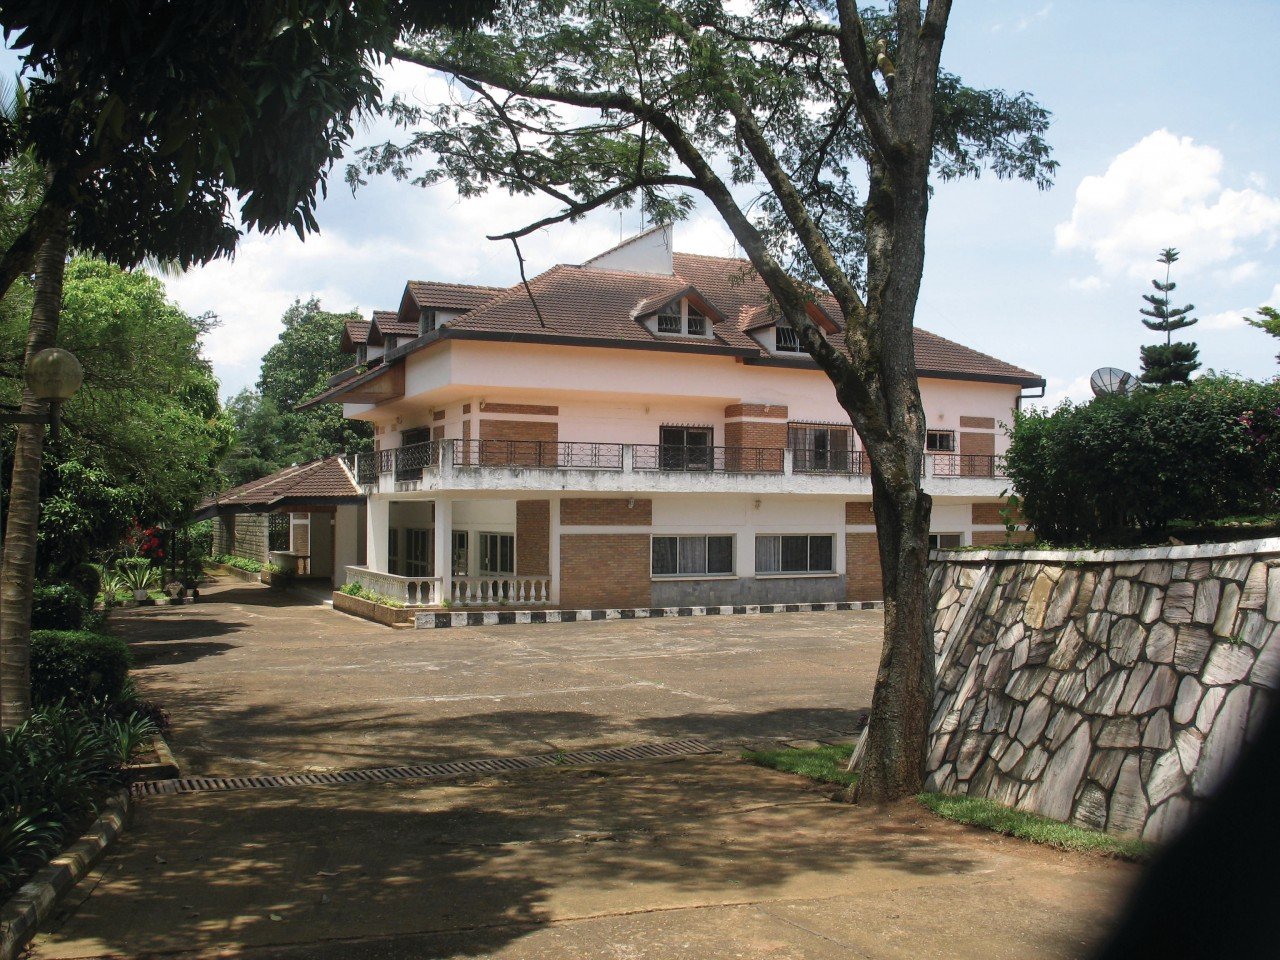 Jour3 : Visite du mémorial de Kigali